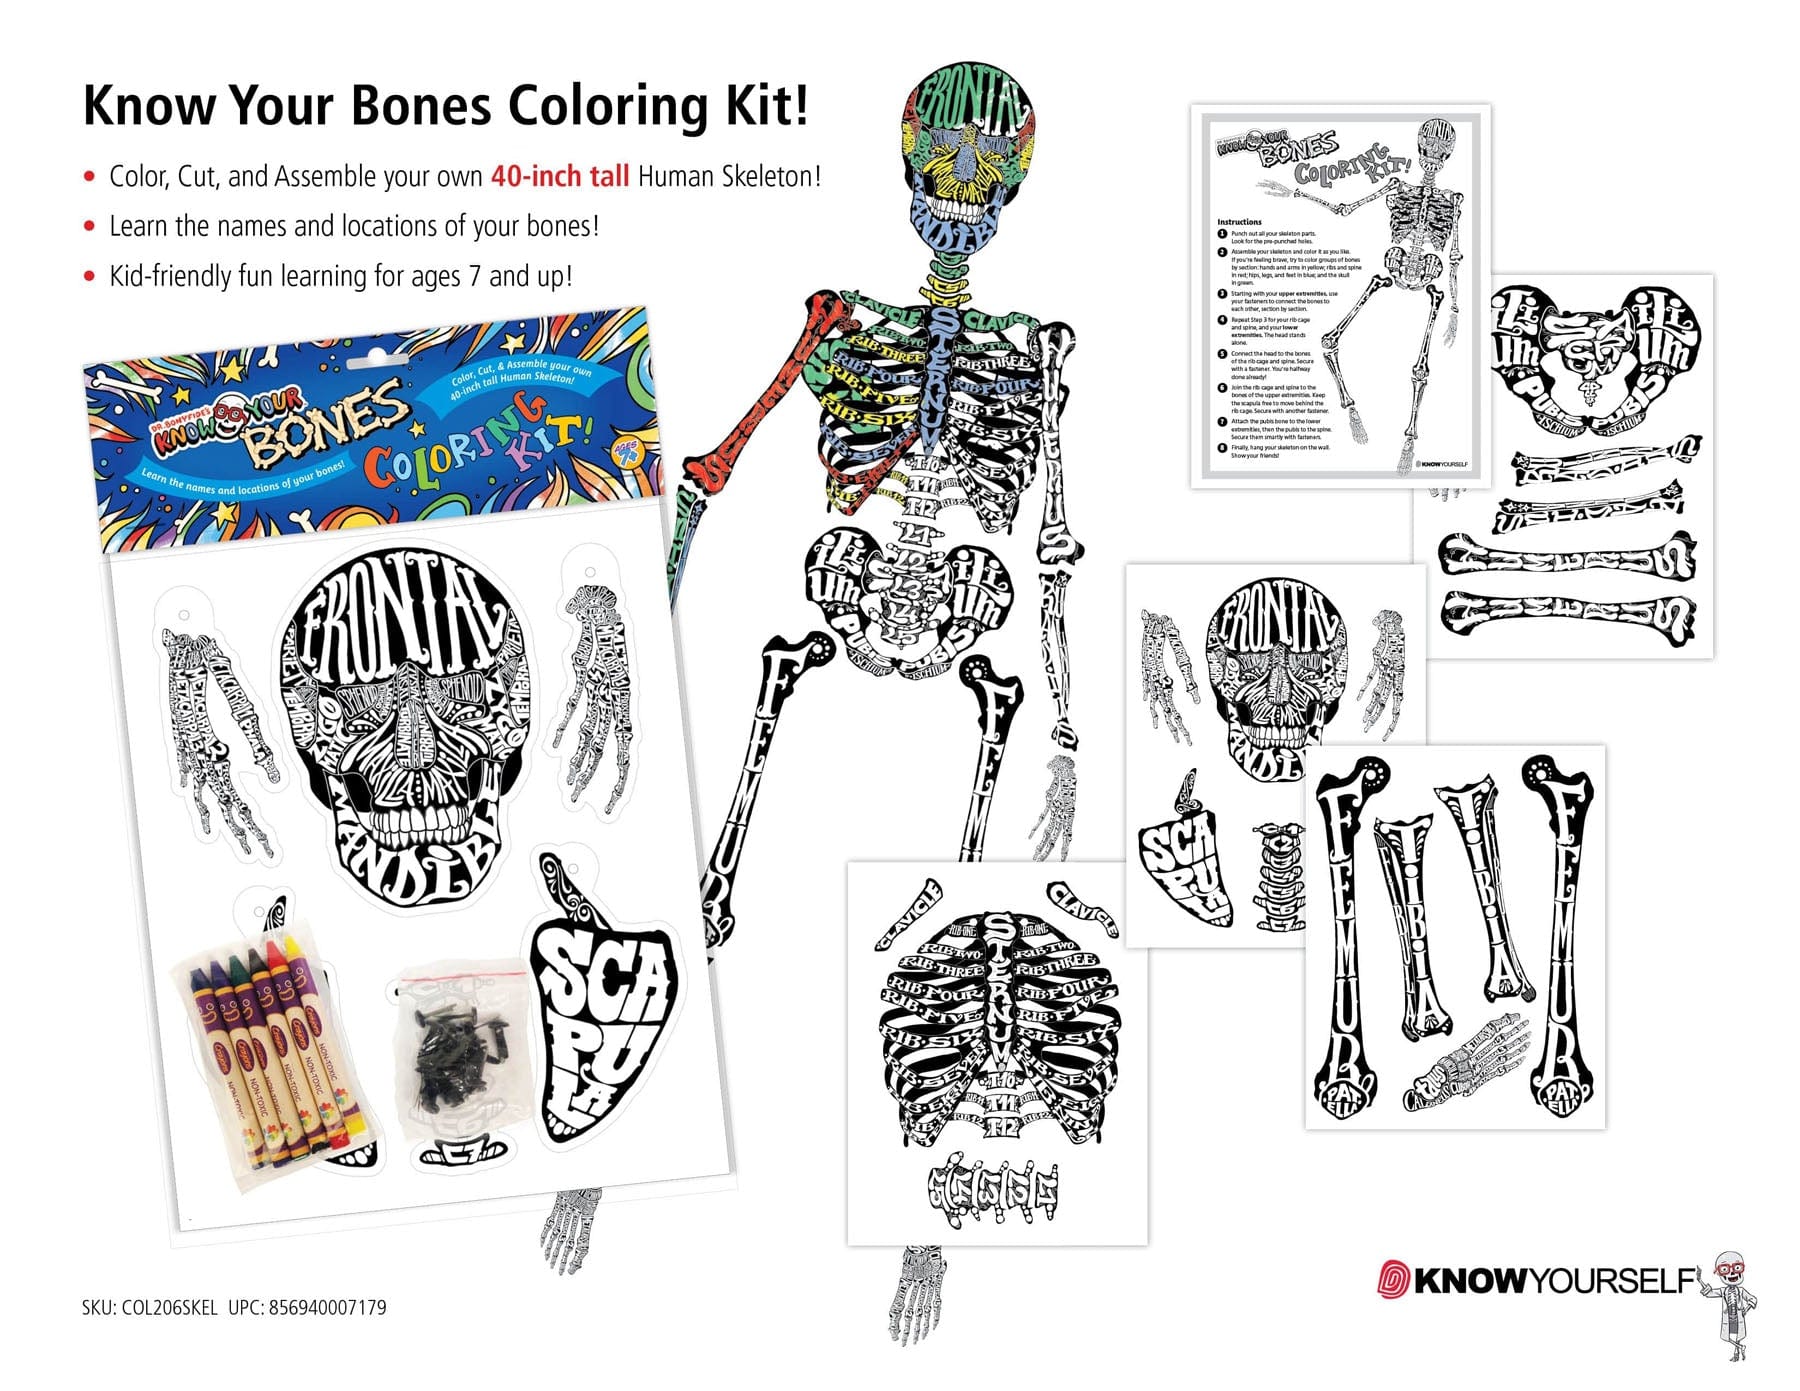 Dr. Bonyfide's Know Your Bones: Coloring Kit